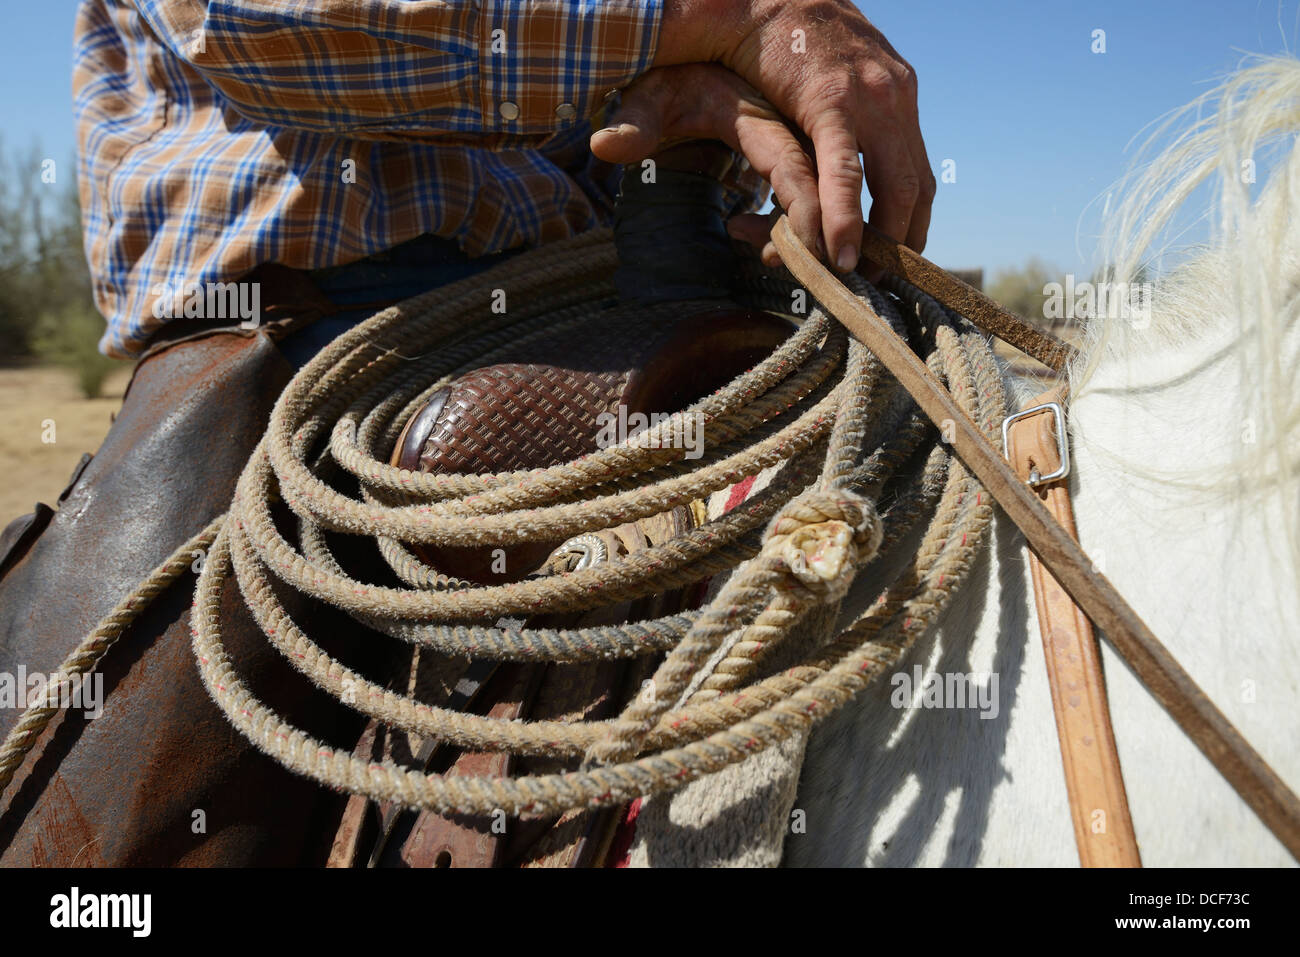 Close-Up Of Cowboy His Rope And His Horse;Arizona Usa Stock Photo